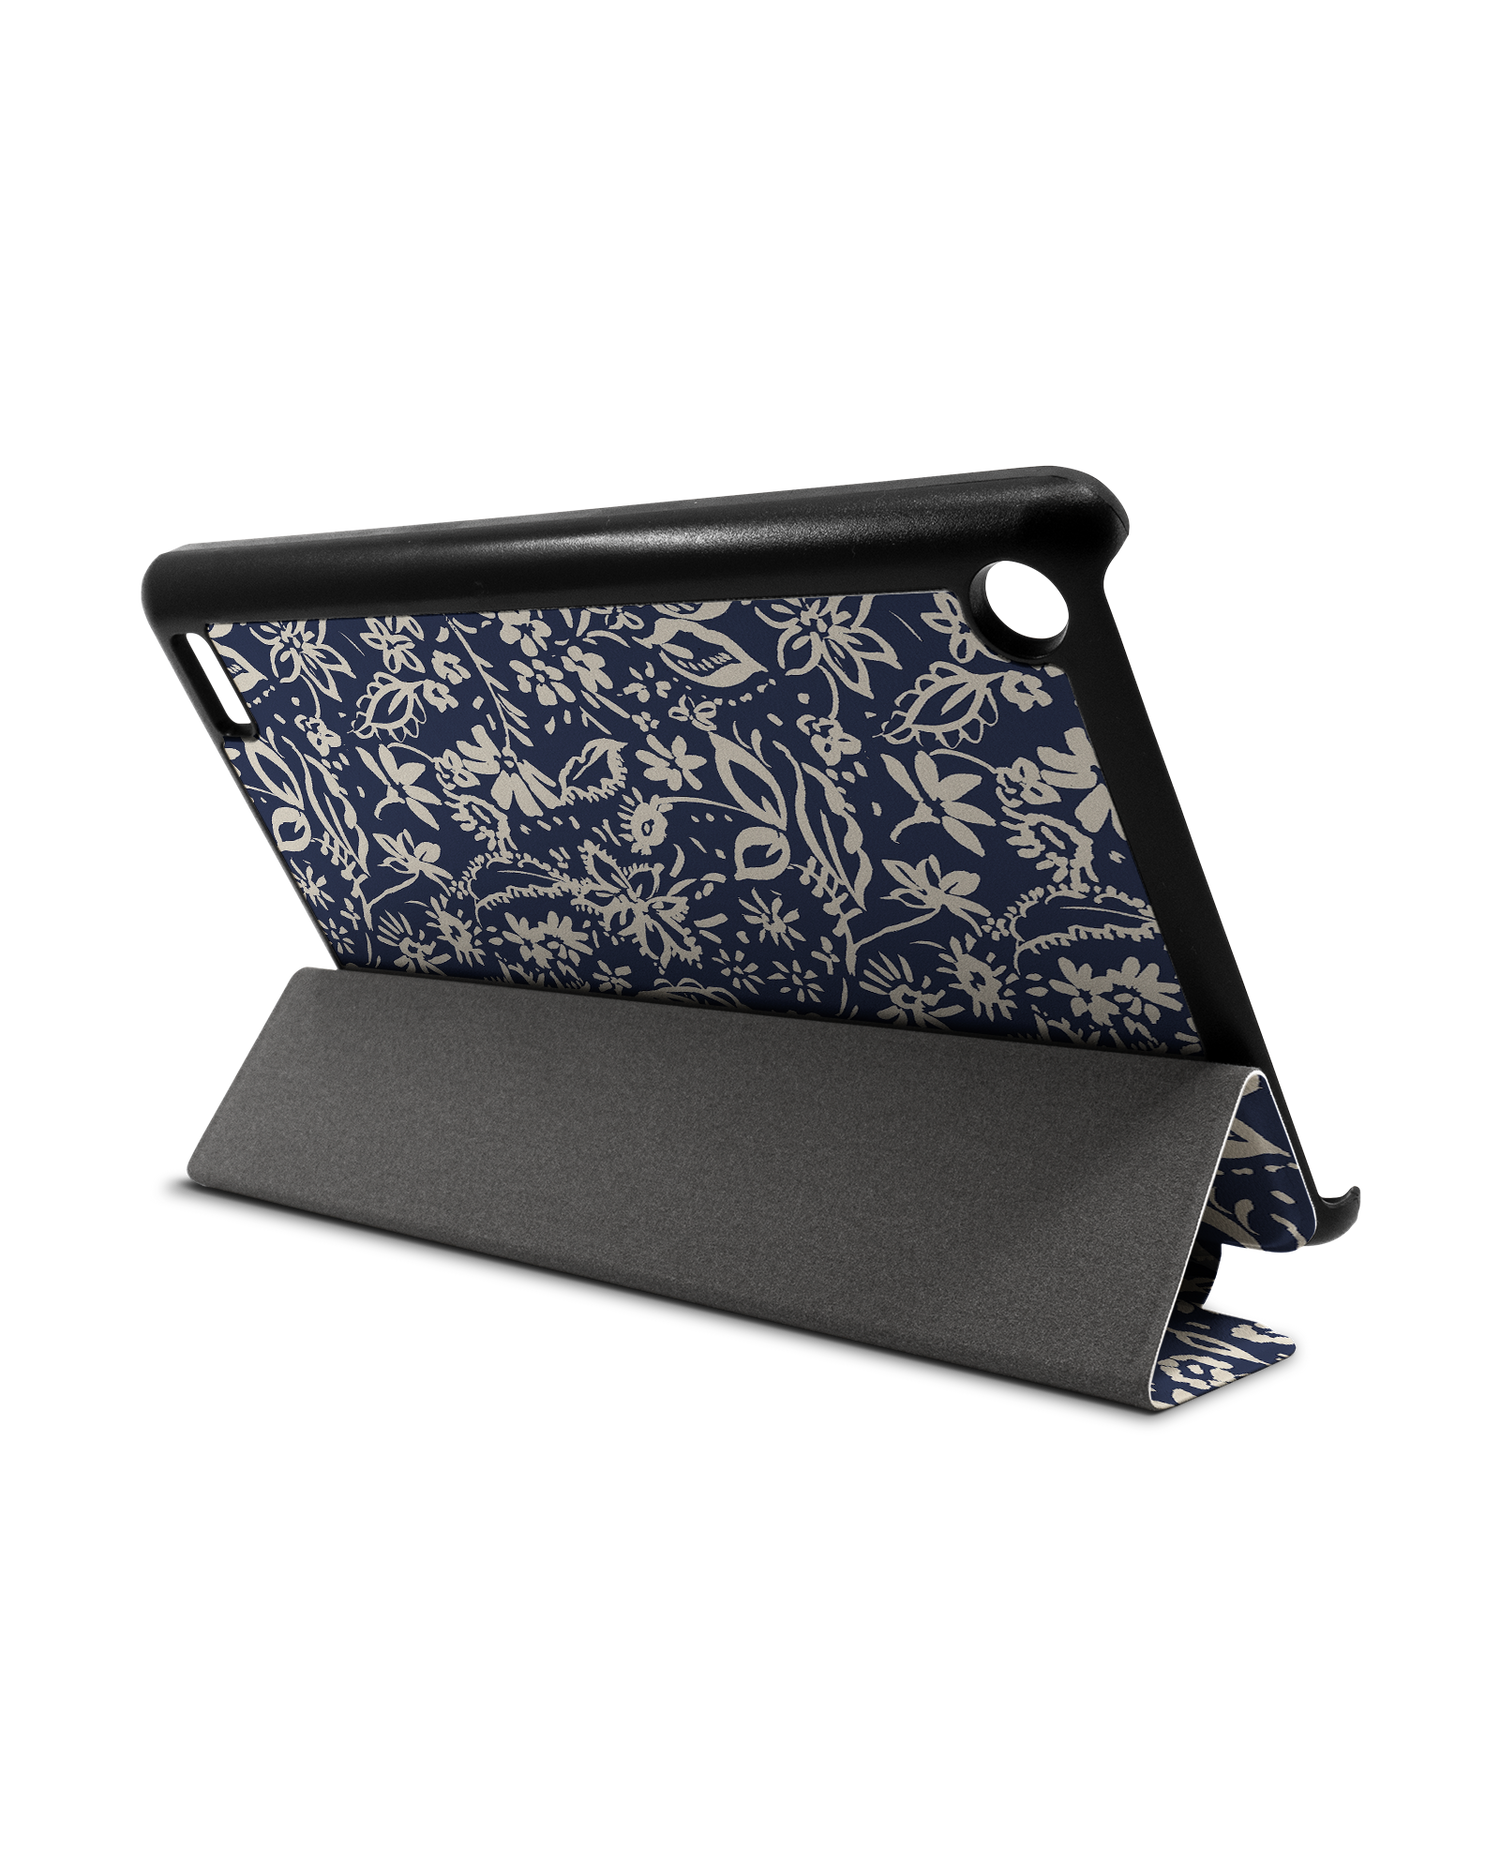 Ditsy Blue Paisley Tablet Smart Case für Amazon Fire 7: Aufgestellt im Querformat